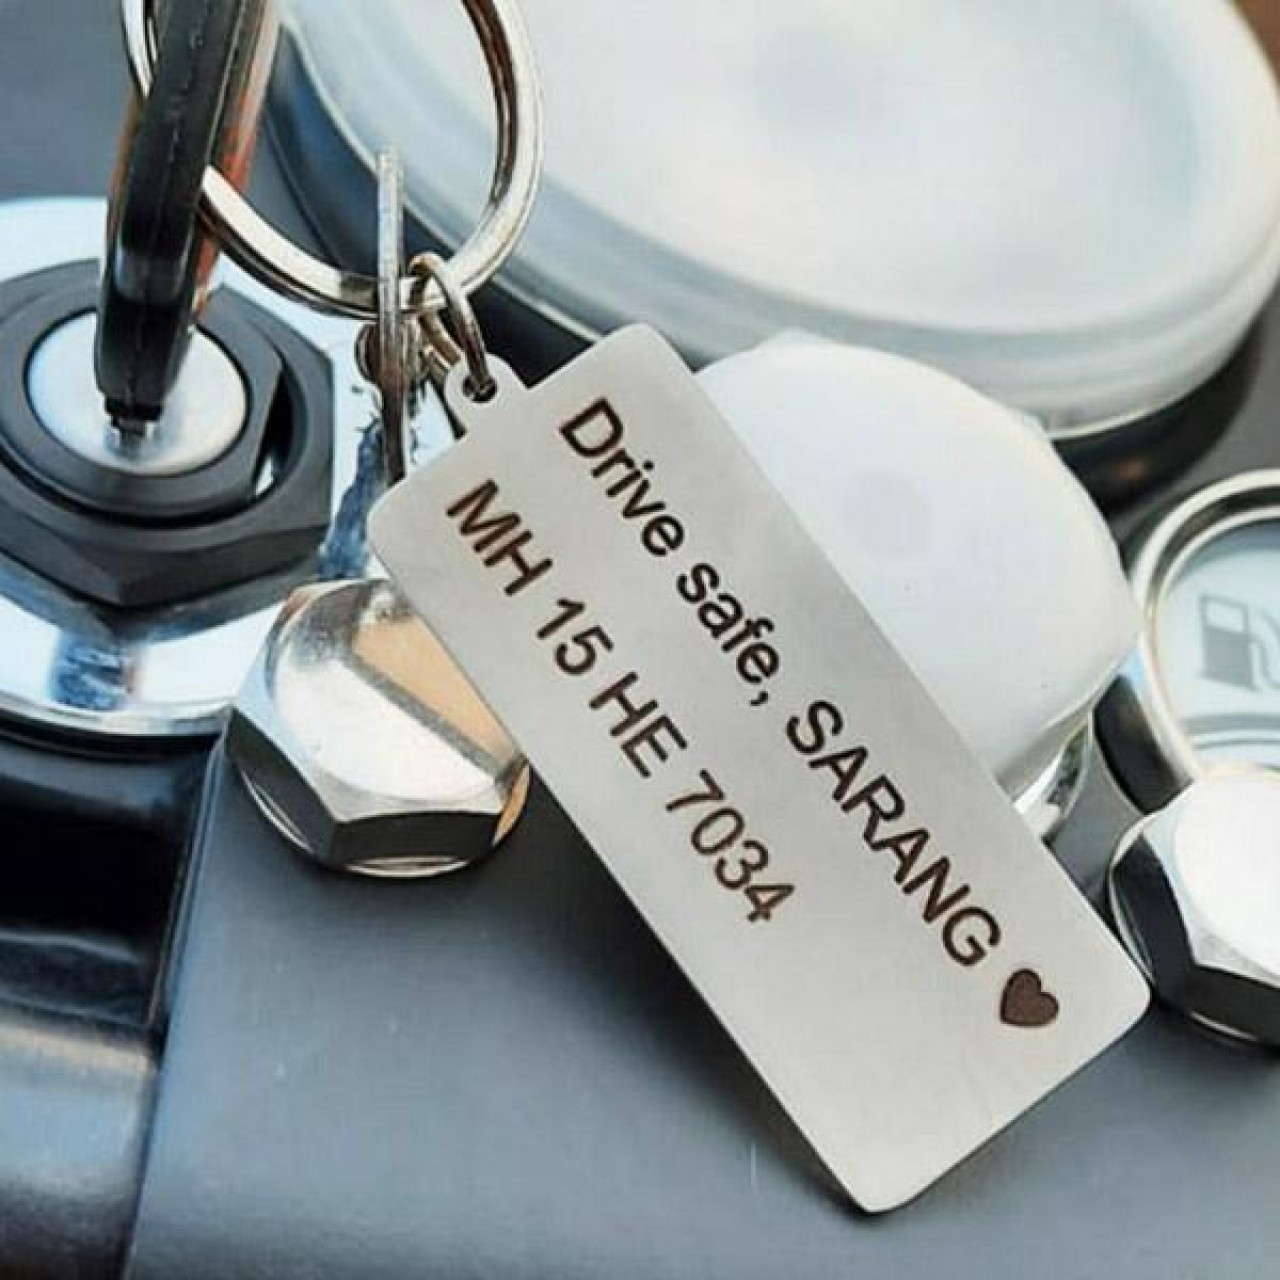 Drive safe customize keychain